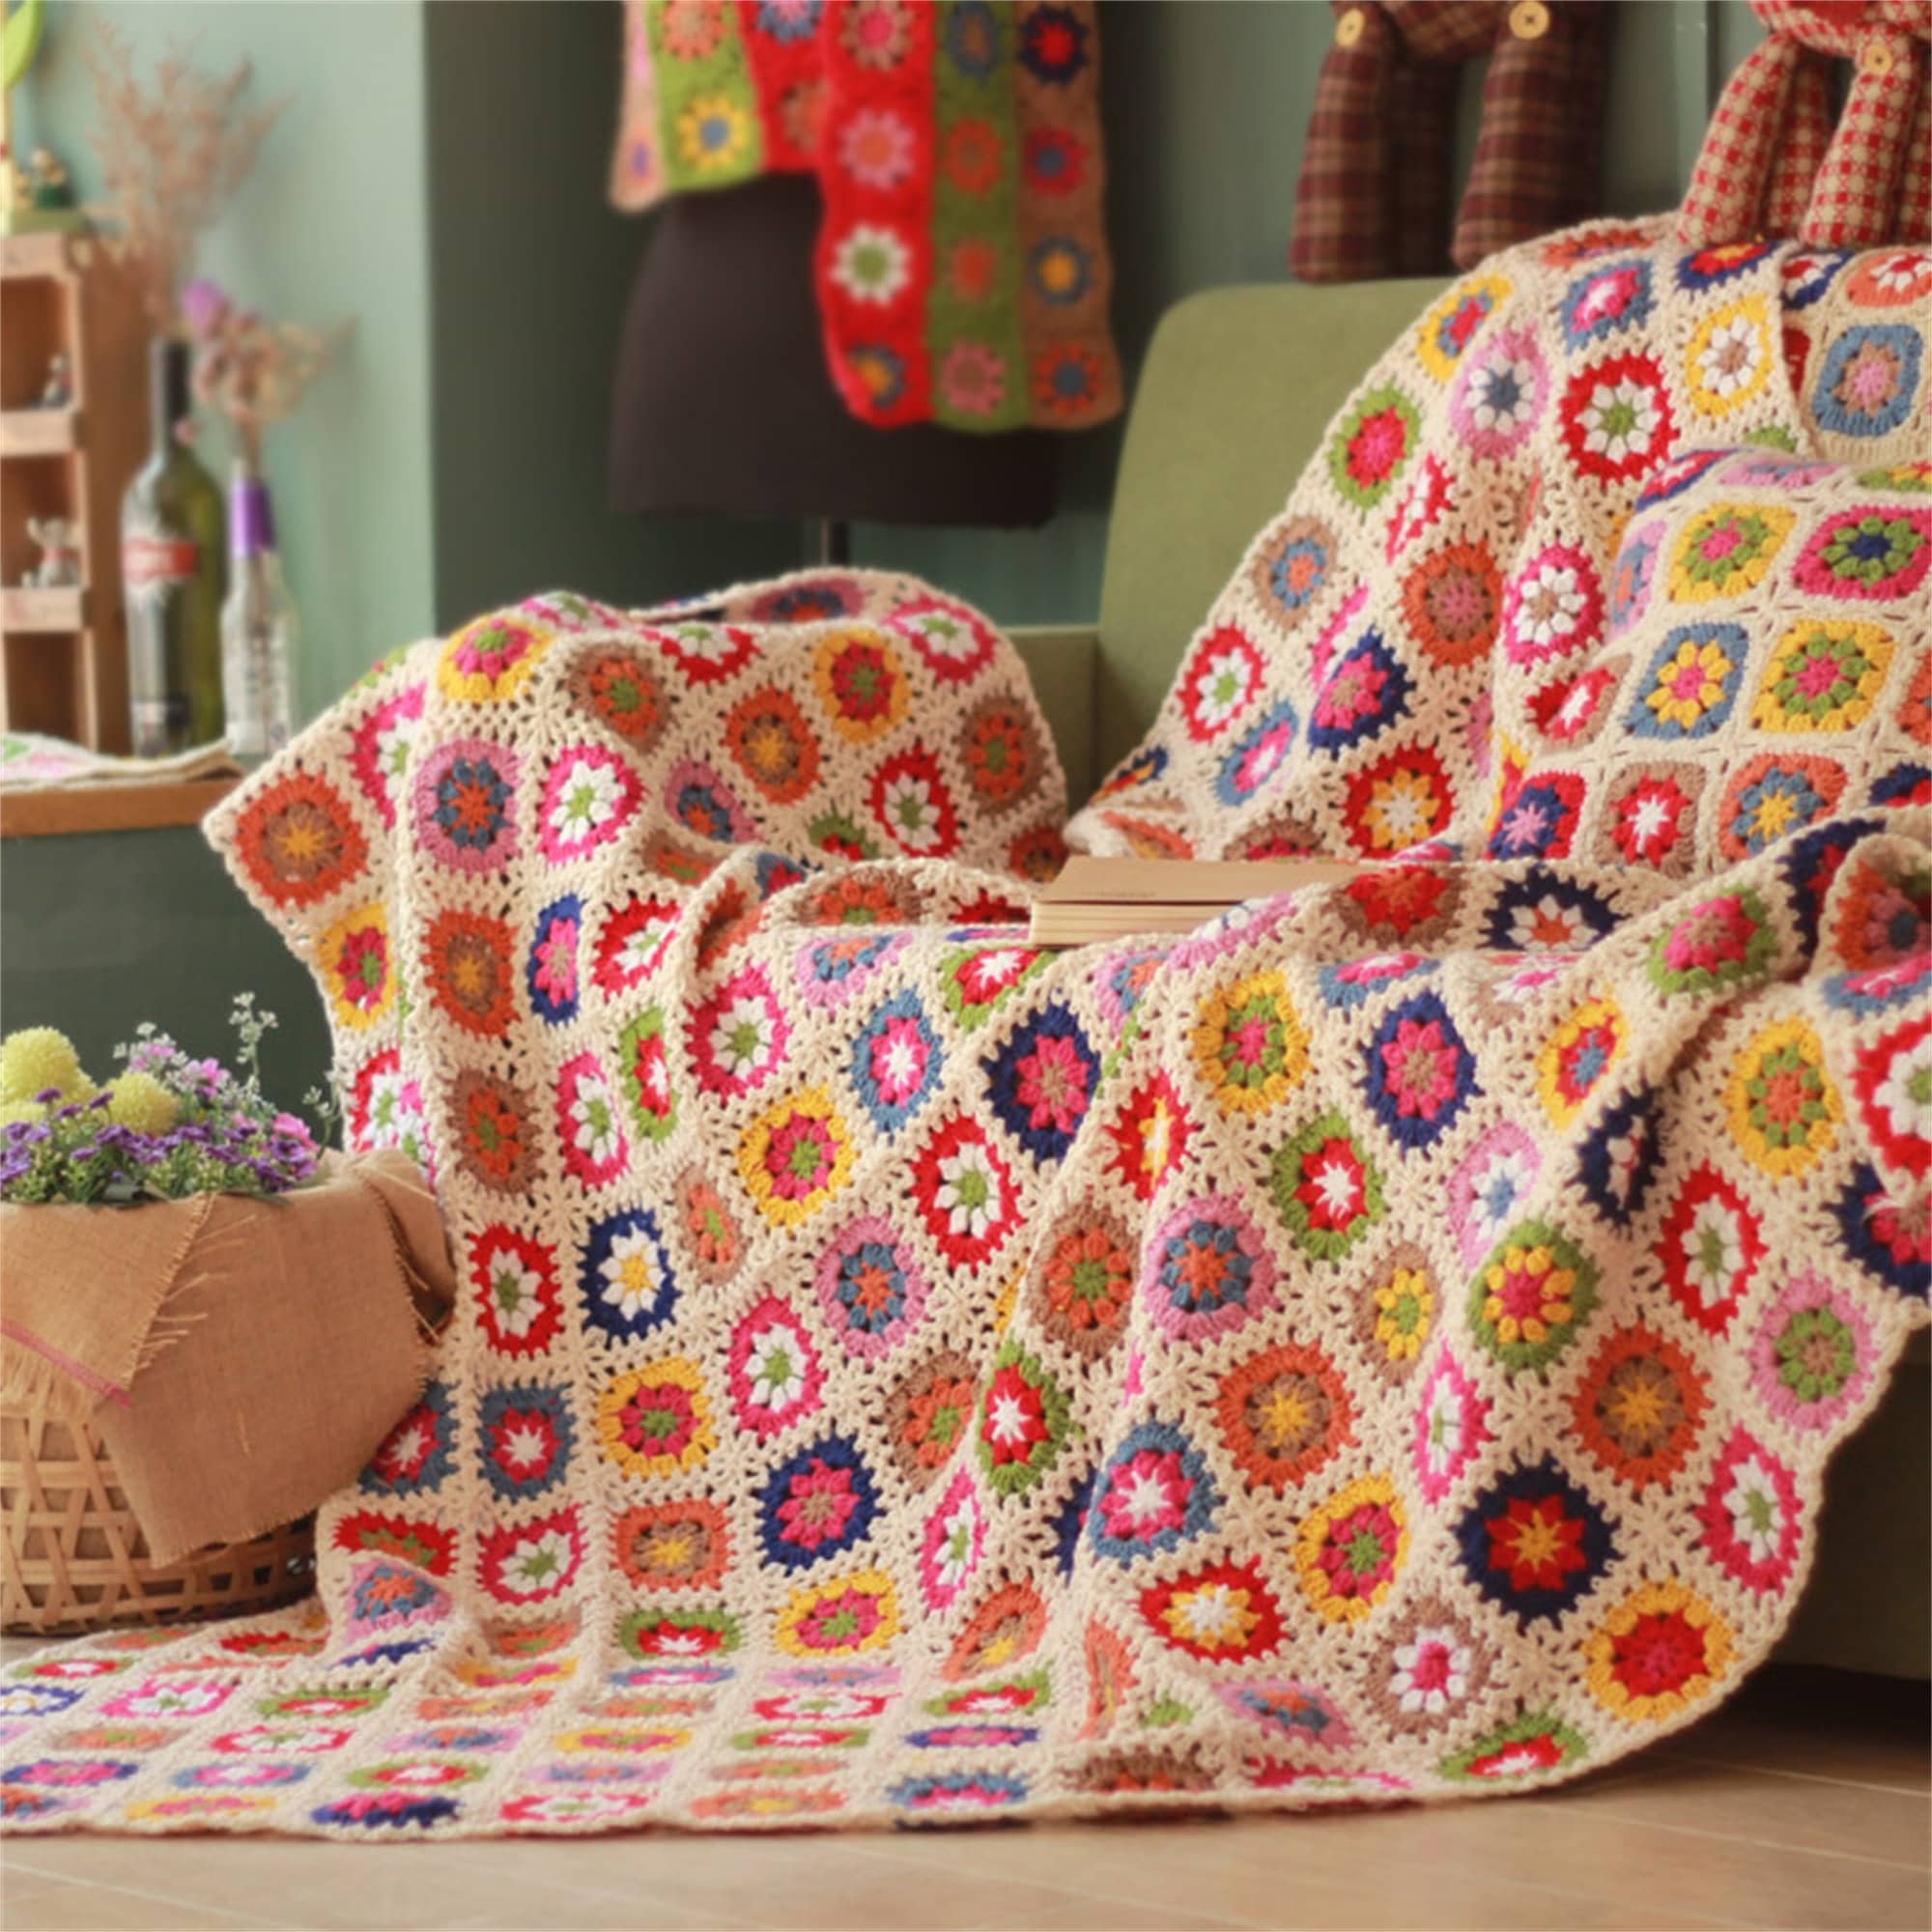 Grand-Mère Square Daisy Crochet Blanket